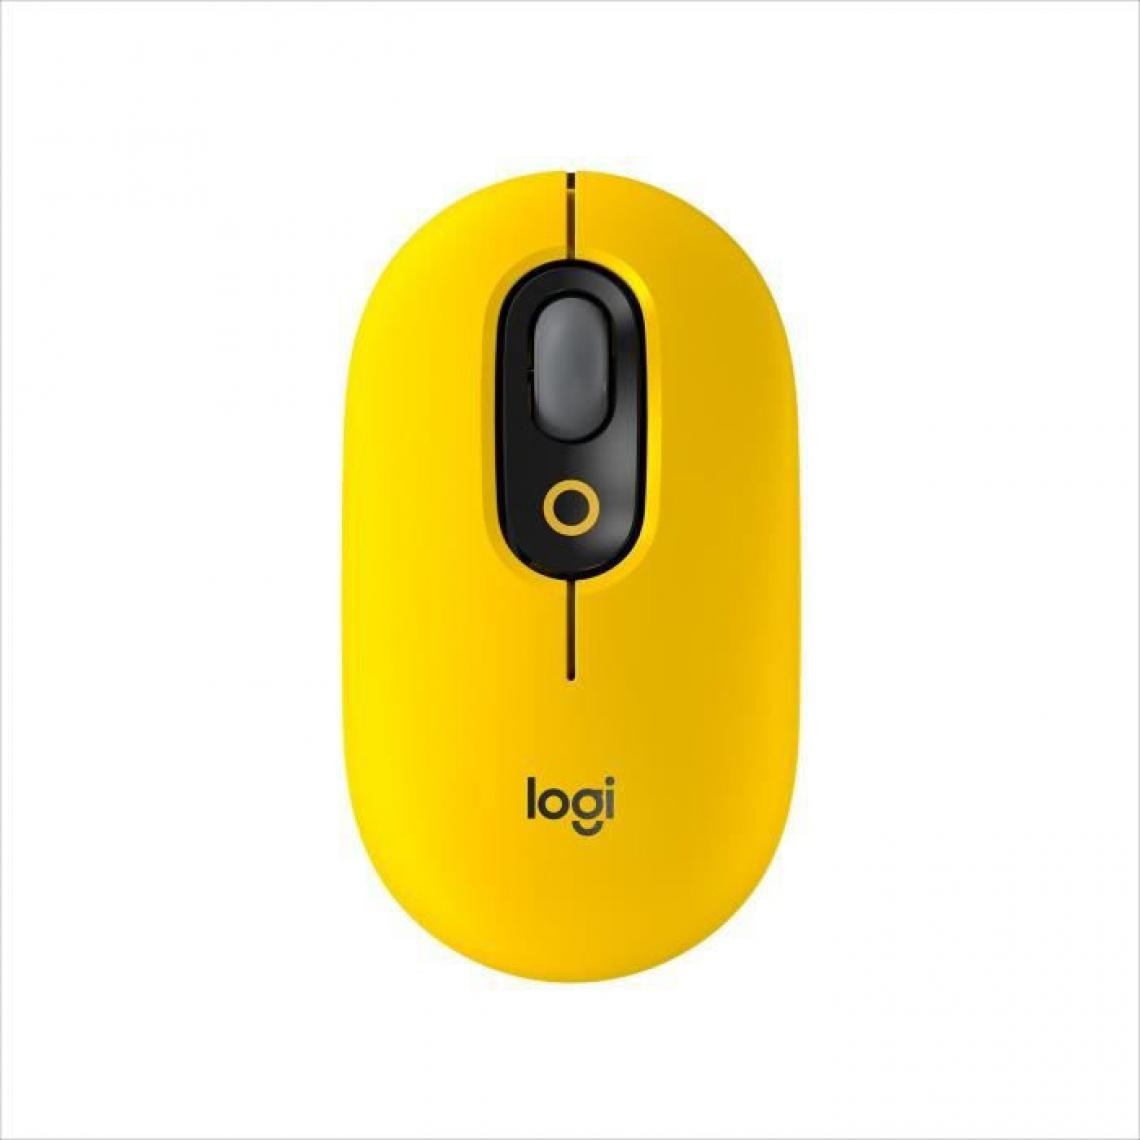 Logitech - Souris Sans Fil Logitech POP Mouse avec Emojis Personnalisables, Bluetooth, USB, Multidispositifs - Jaune - Souris